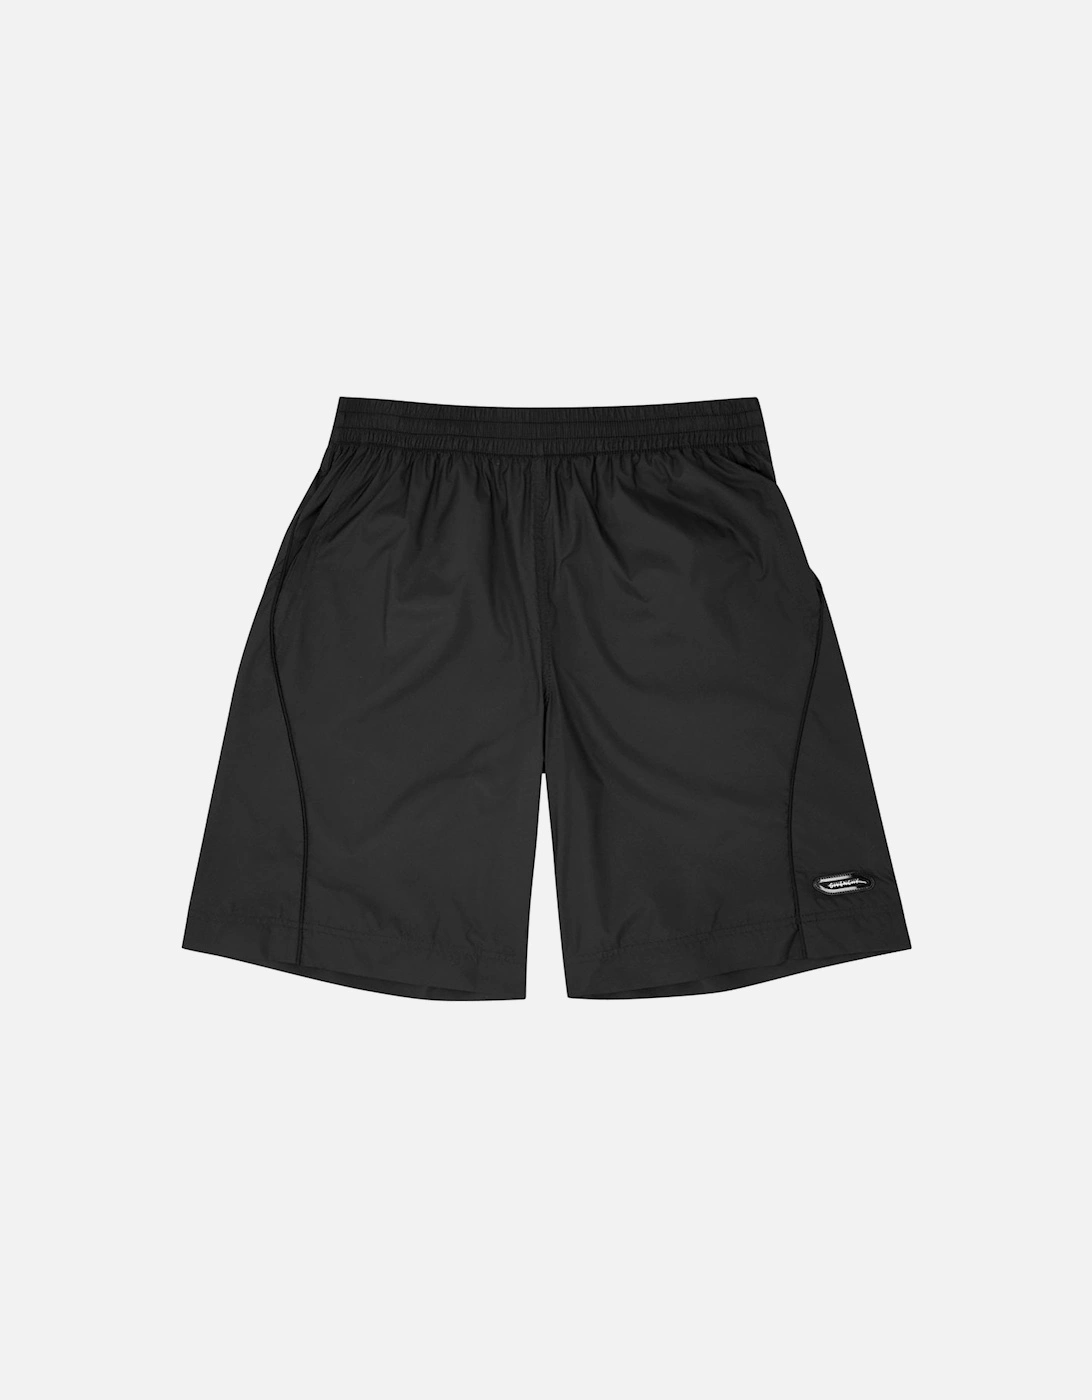 TK-MX Nylon Shorts Black, 6 of 5